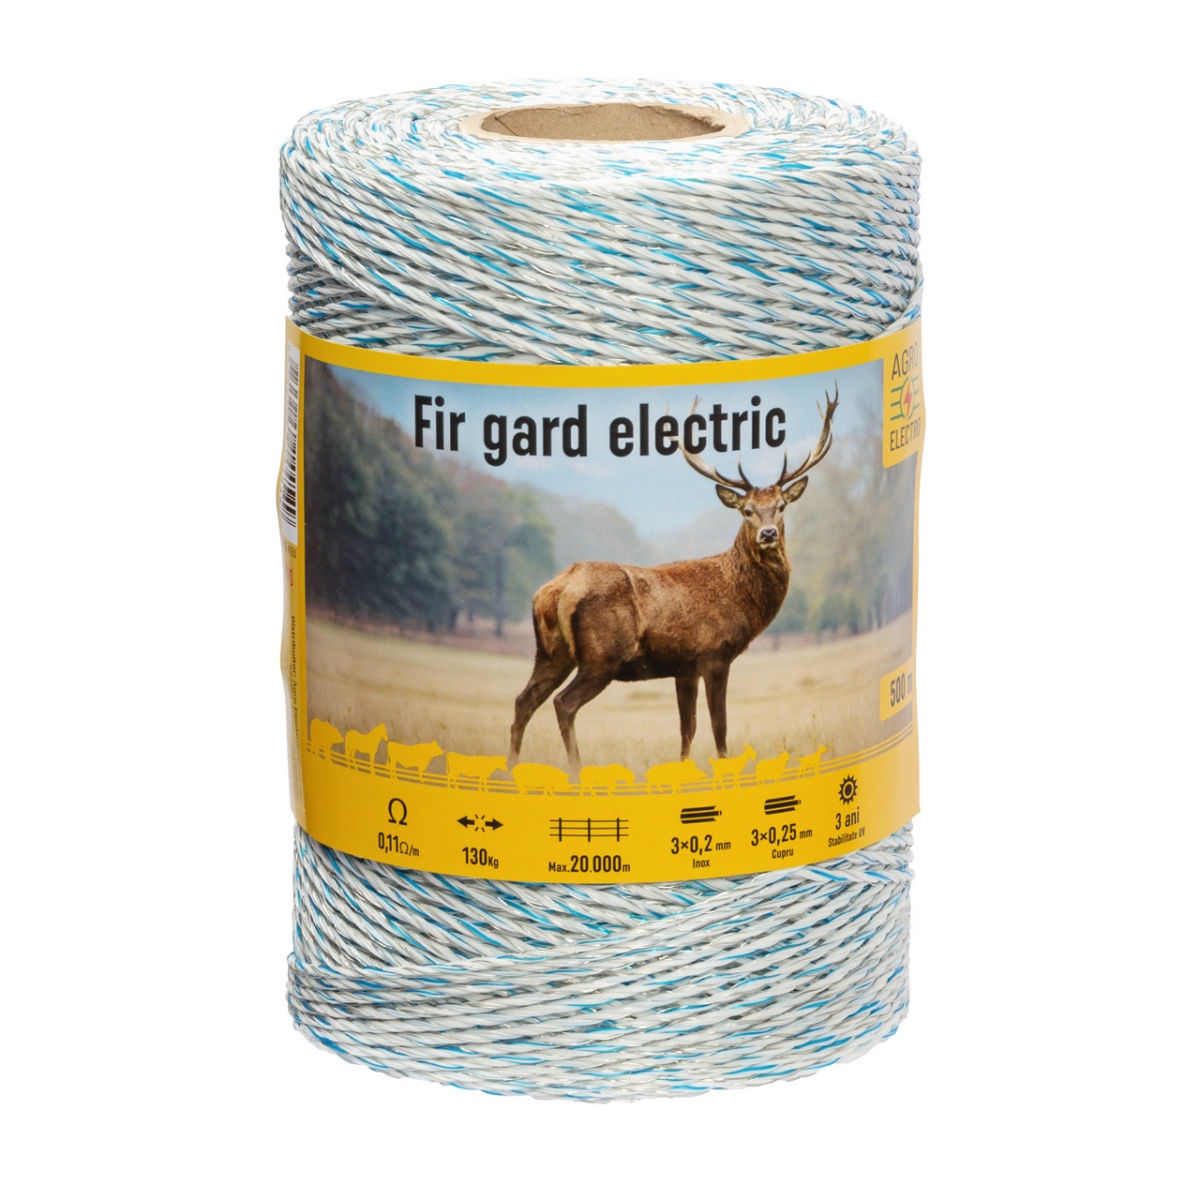 Fir gard electric - 500 m - 130 kg - 0,11 Ω/m